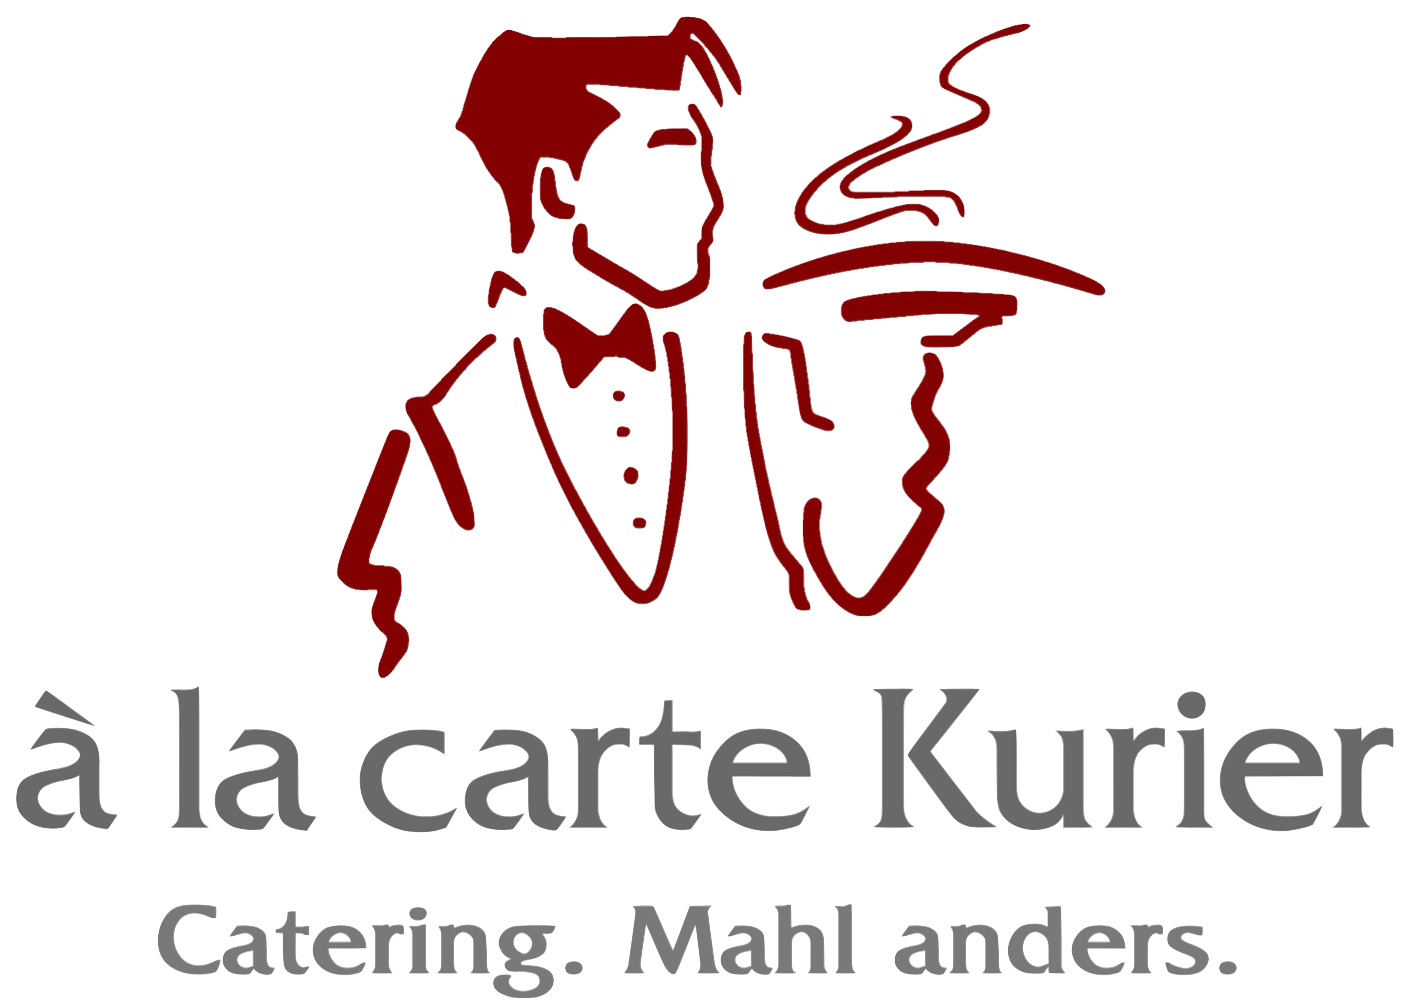 � la carte Kurier Catering Service